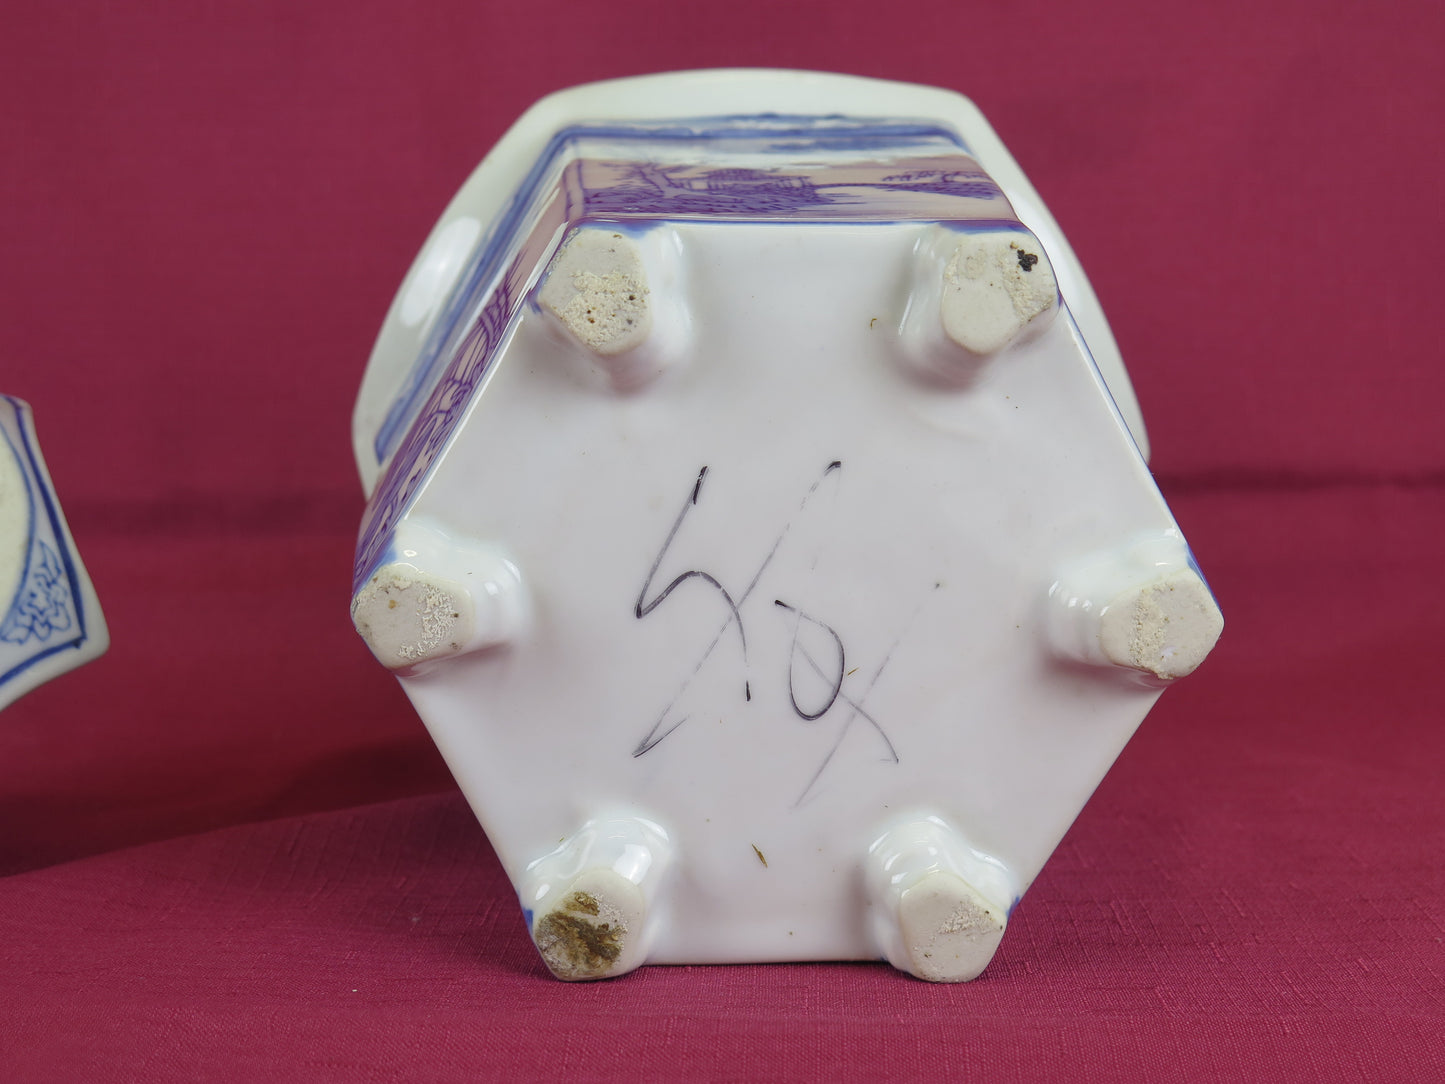 Vaso di ceramica cinese vintage da collezione cina bianco blu dipinto mano CM4